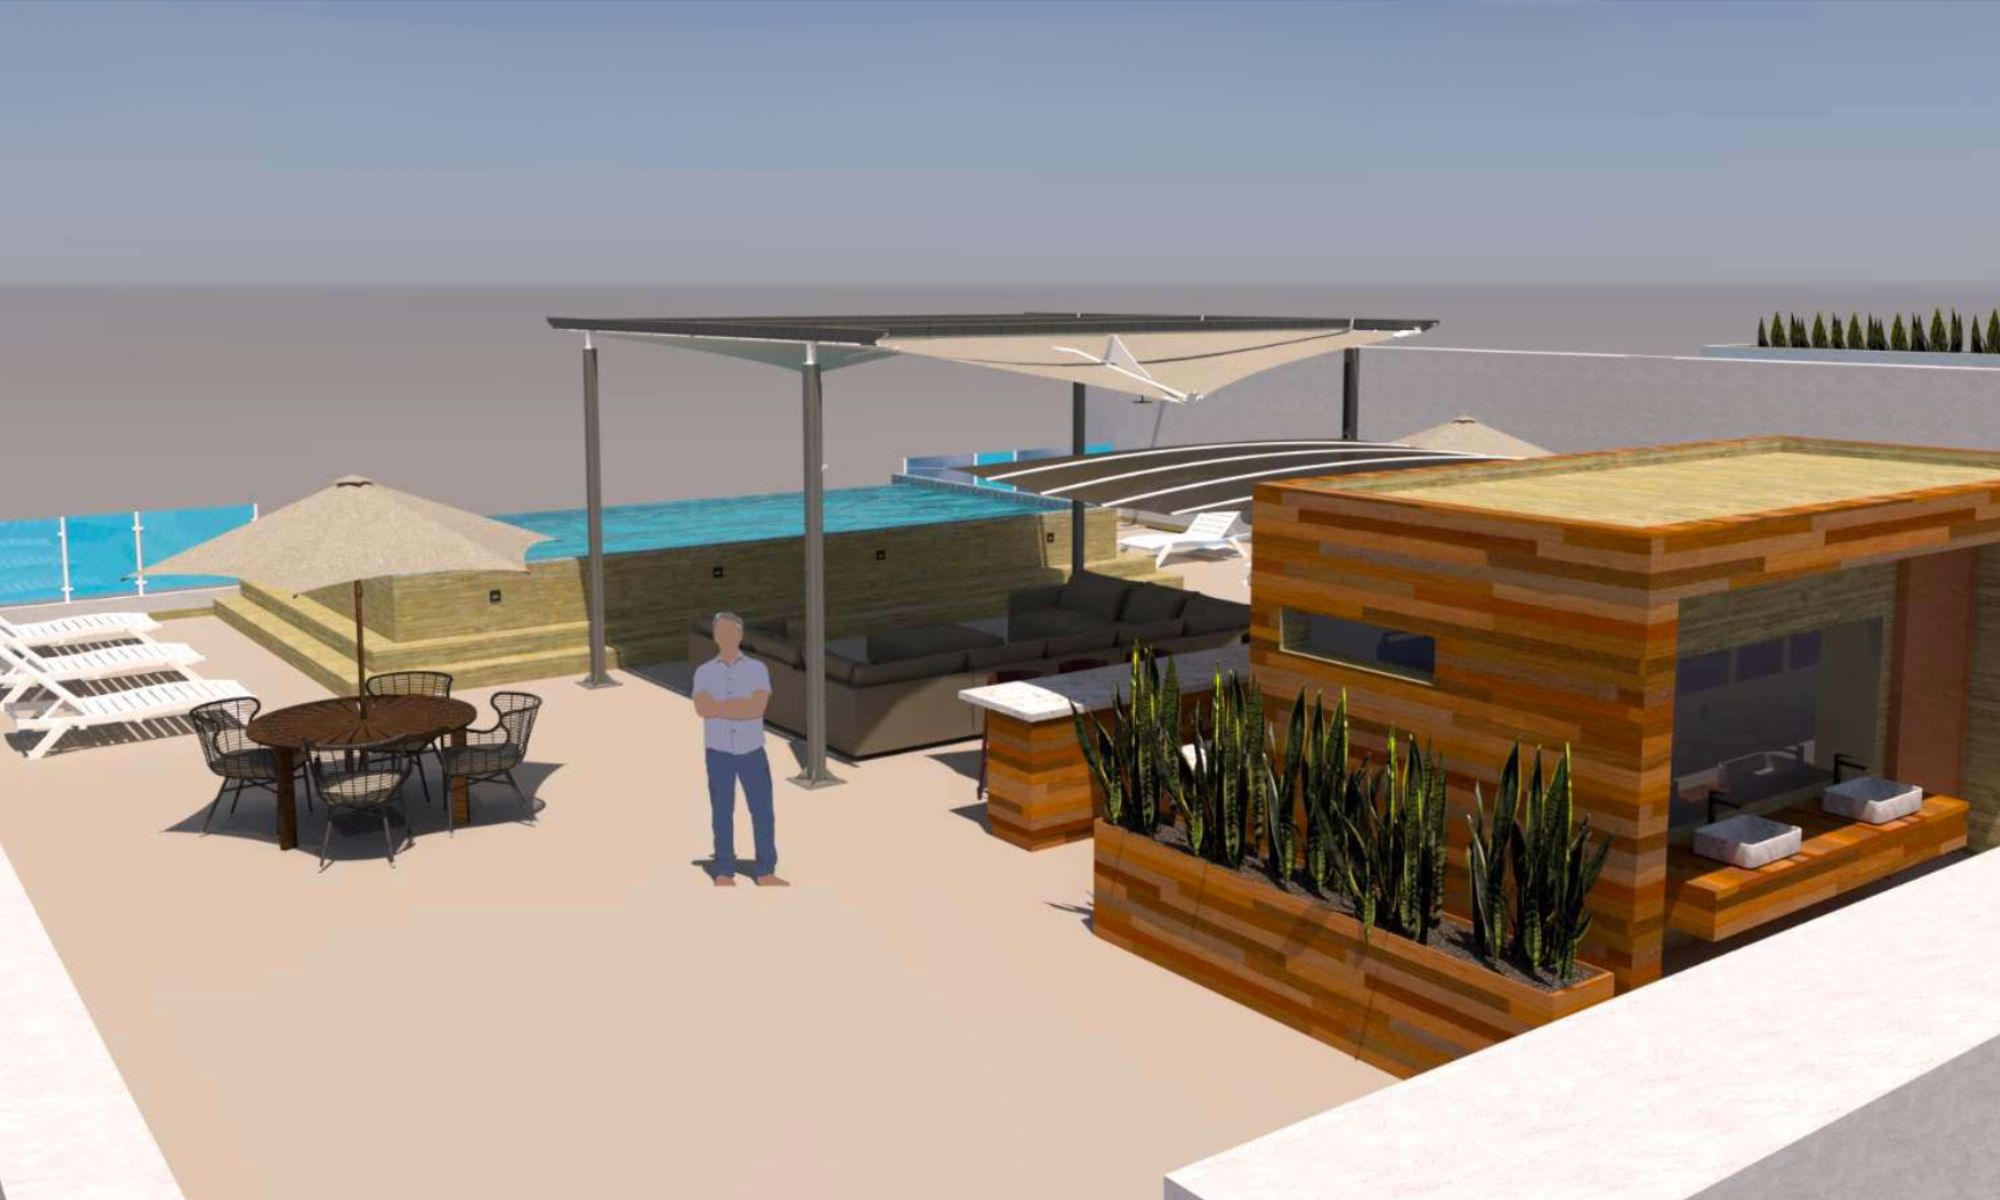 Departamento  de terraza grande con vista al mar, cuarto de servicio con baño completo, alberca, cerca de Playa Arrocito, en venta Huatulco